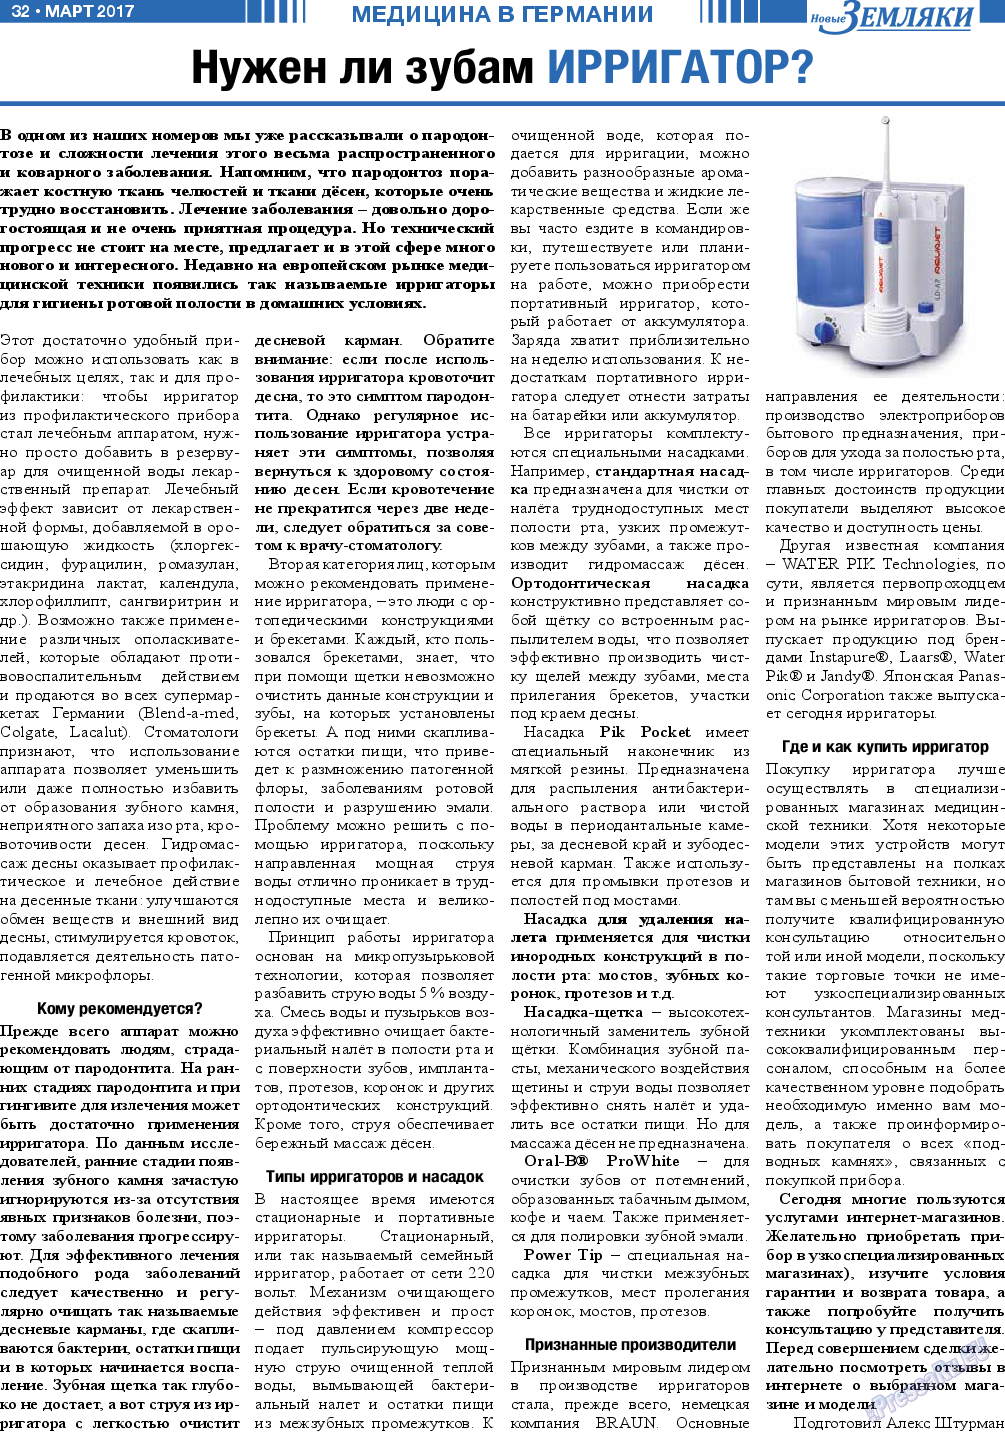 Новые Земляки, газета. 2017 №3 стр.32